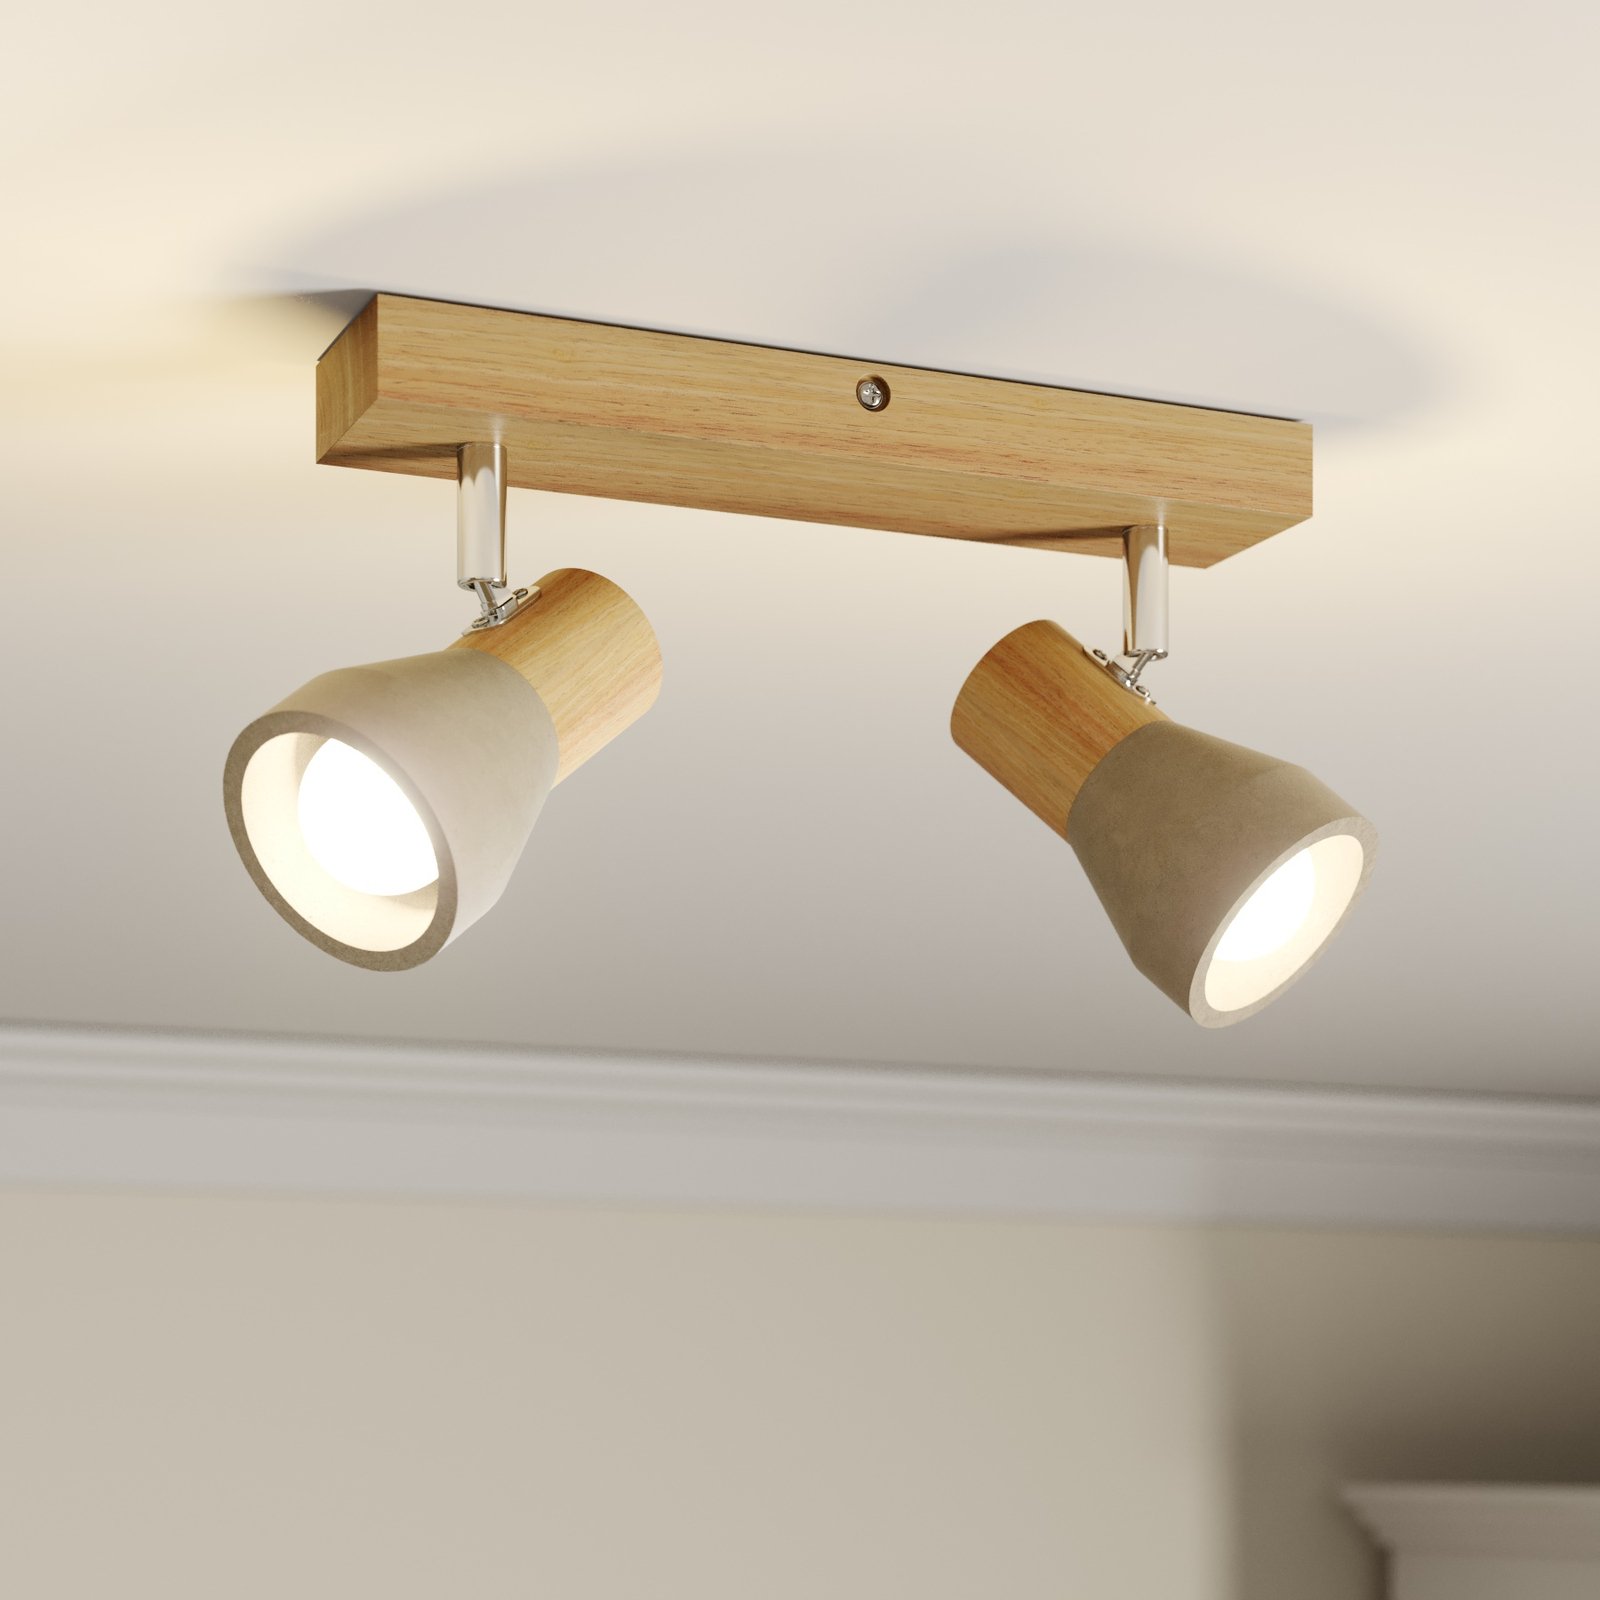 Filiz spotlight made of wood and concrete, 2-bulb